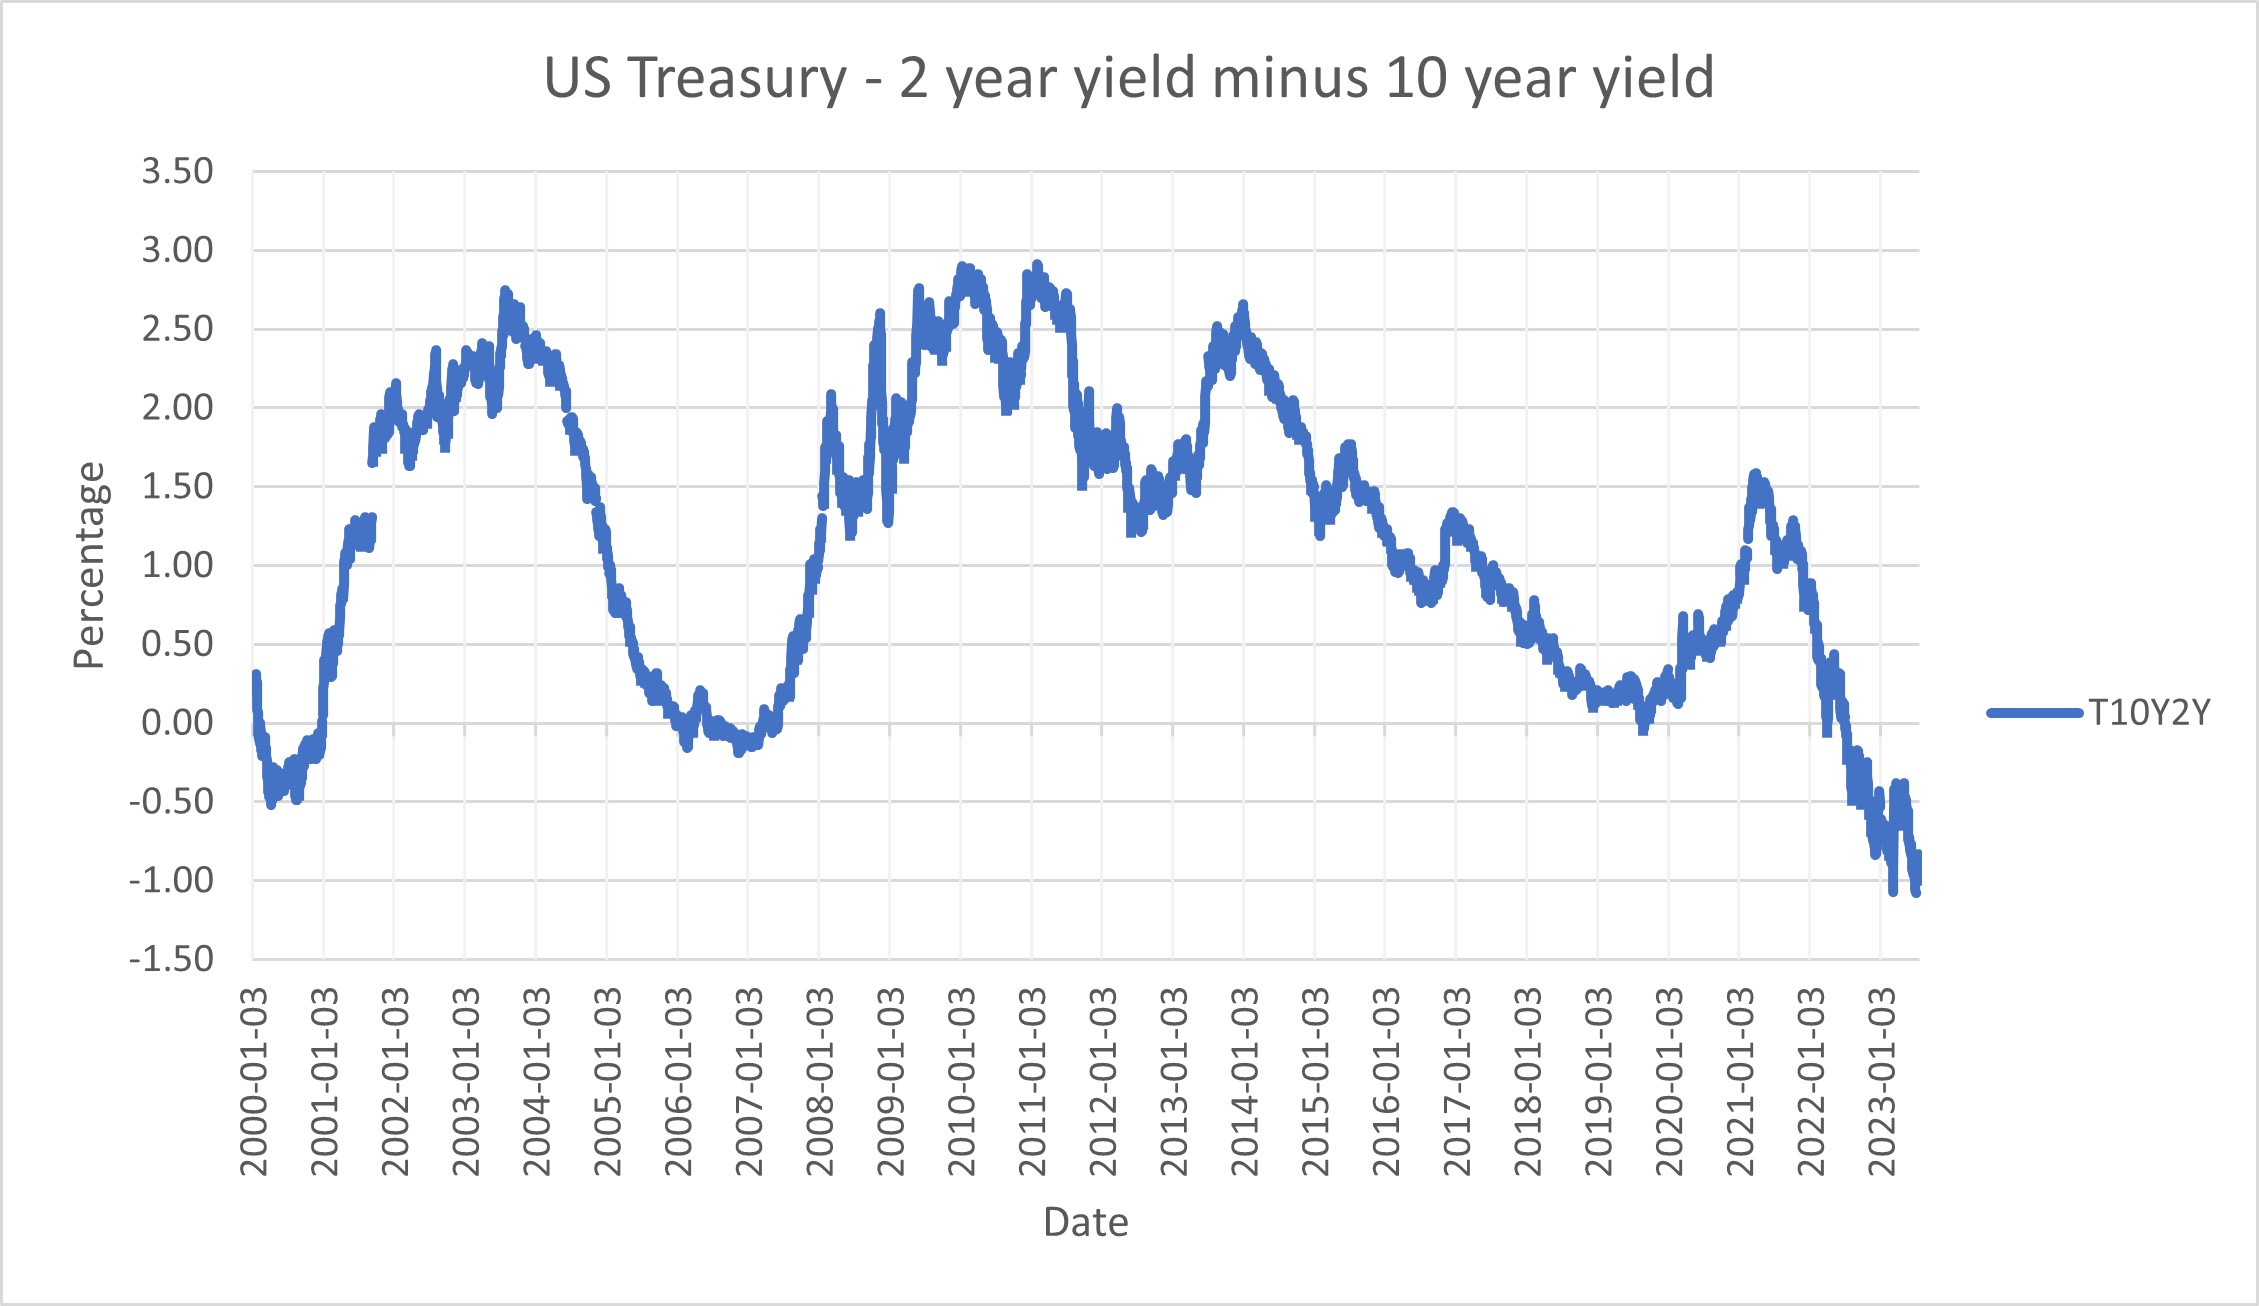 2 year treasury yield minus 10 year treasury yield data[16]